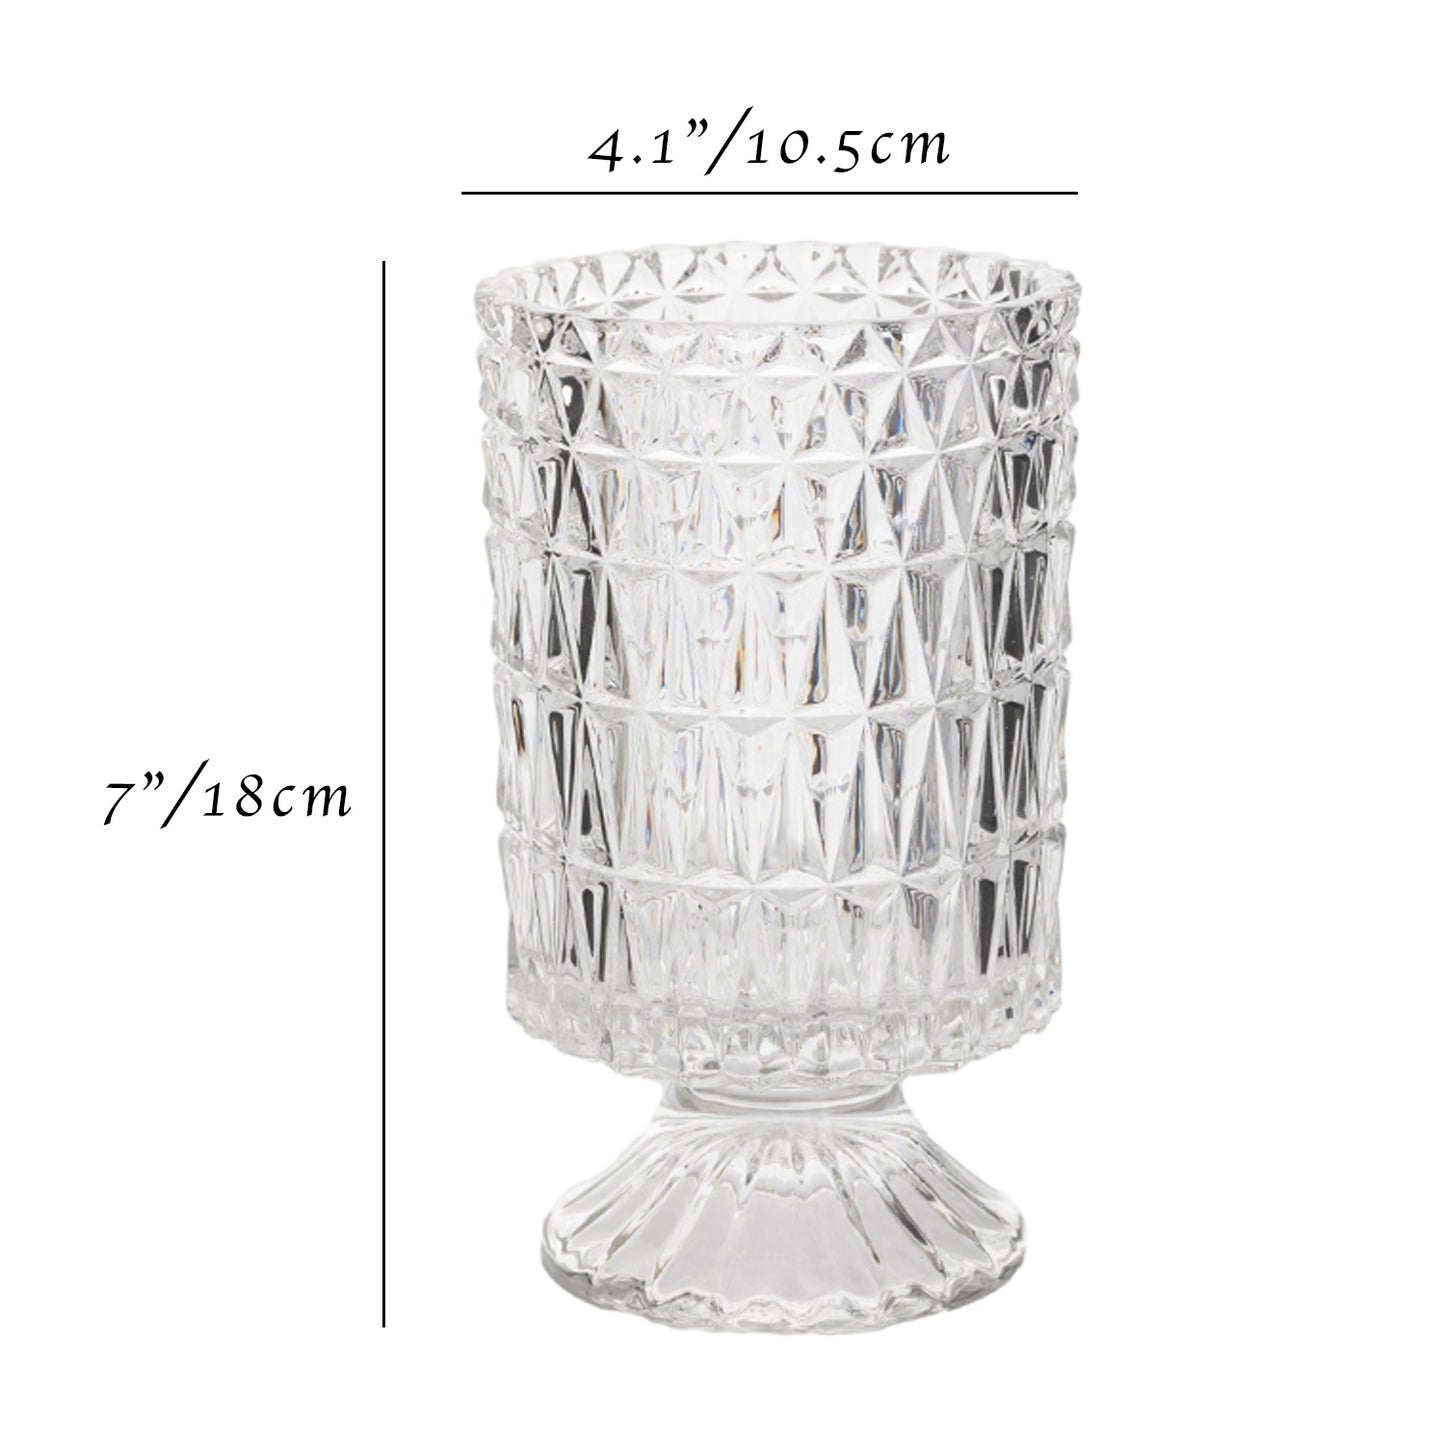 7“ Pedestal Clear Glass Urn Vase